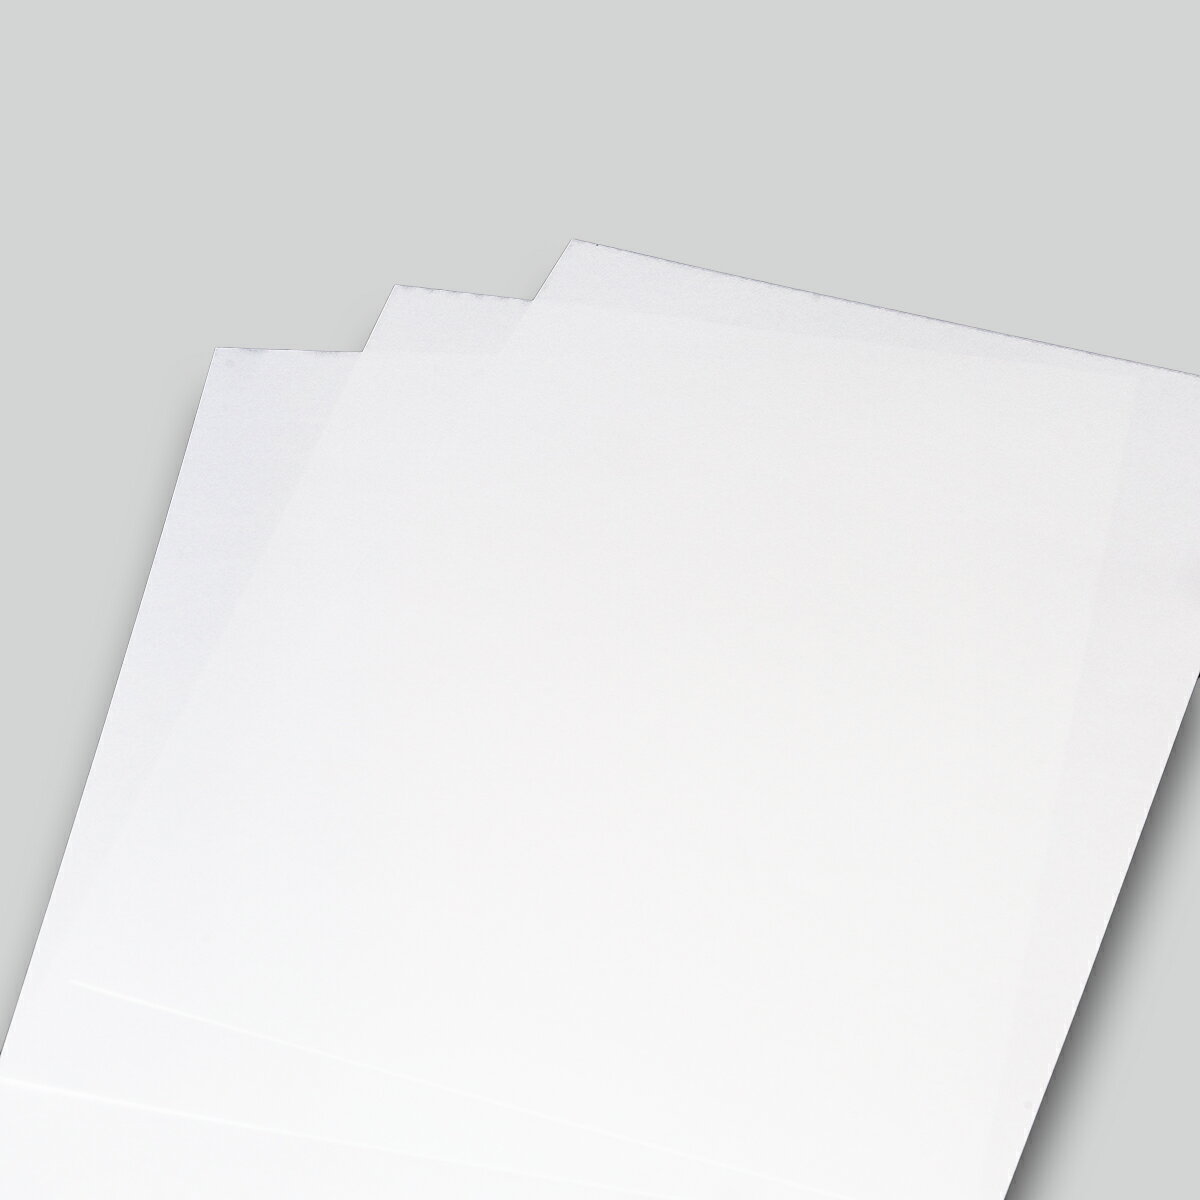 商品情報紙の色白紙の厚み0.12mm厚　コピー用紙3枚分ぐらいの厚みです。注意撮影の具合やモニターの発色の具合により色合いが実物と異なります。ご了承の上ご購入ください。Aプラン ピュアホワイト 68.5kgA4サイズ　150枚1セット ソフトな肌合いと淡い白で、使いやすくリーズナブルな非塗工高級印刷用紙です。幅広い用途にご使用いただけます。 5